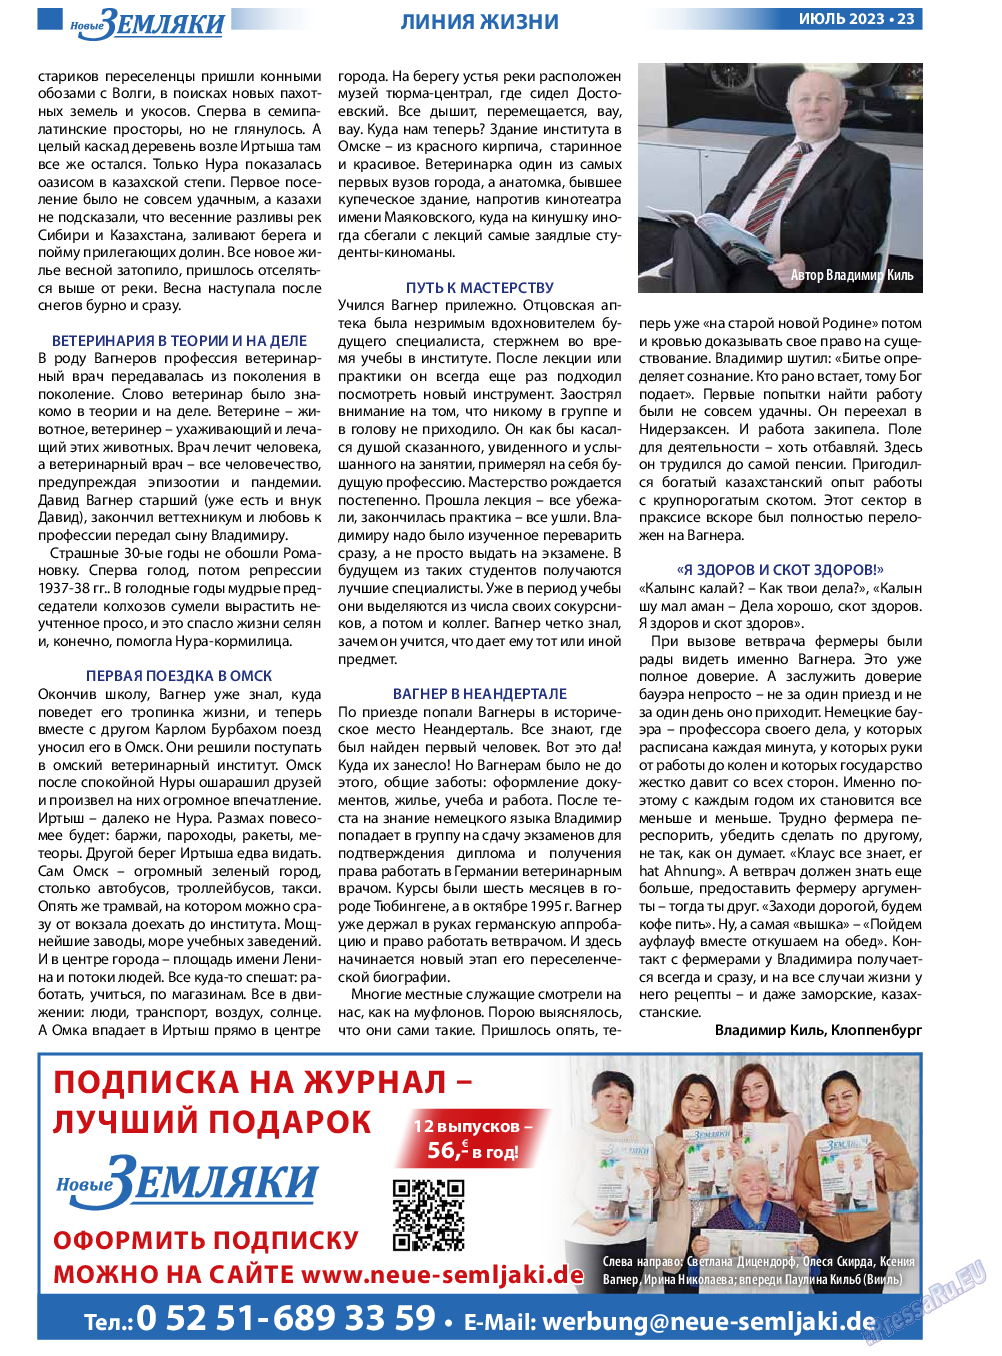 Новые Земляки, газета. 2023 №7 стр.23